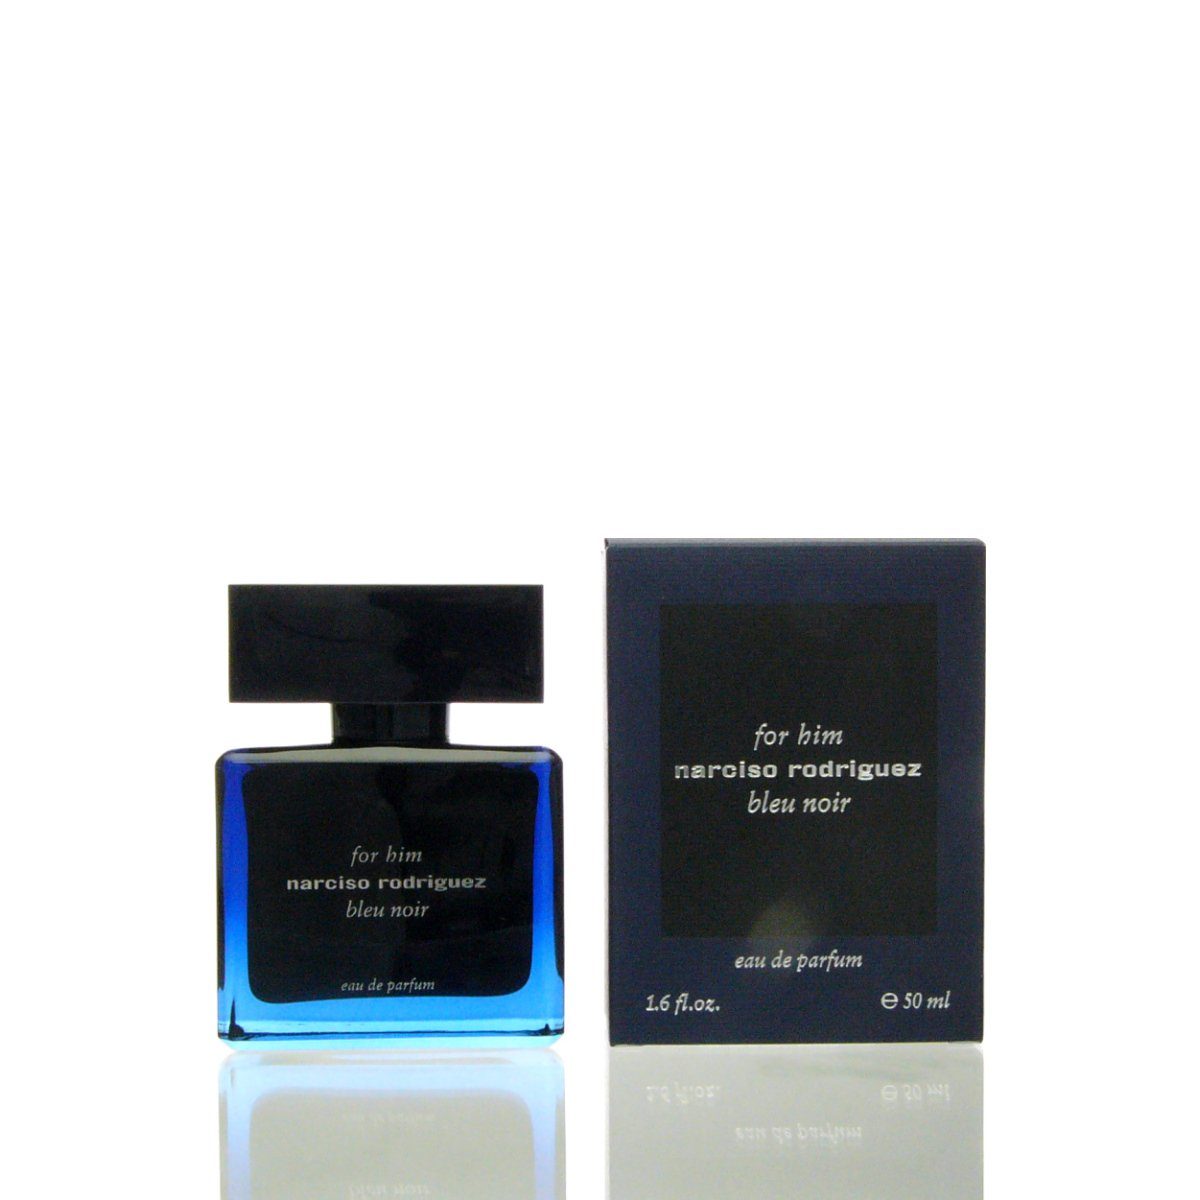 narciso rodriguez Eau Him For Bleu Noir Narciso Eau de Rodriguez Parfum de Parfum